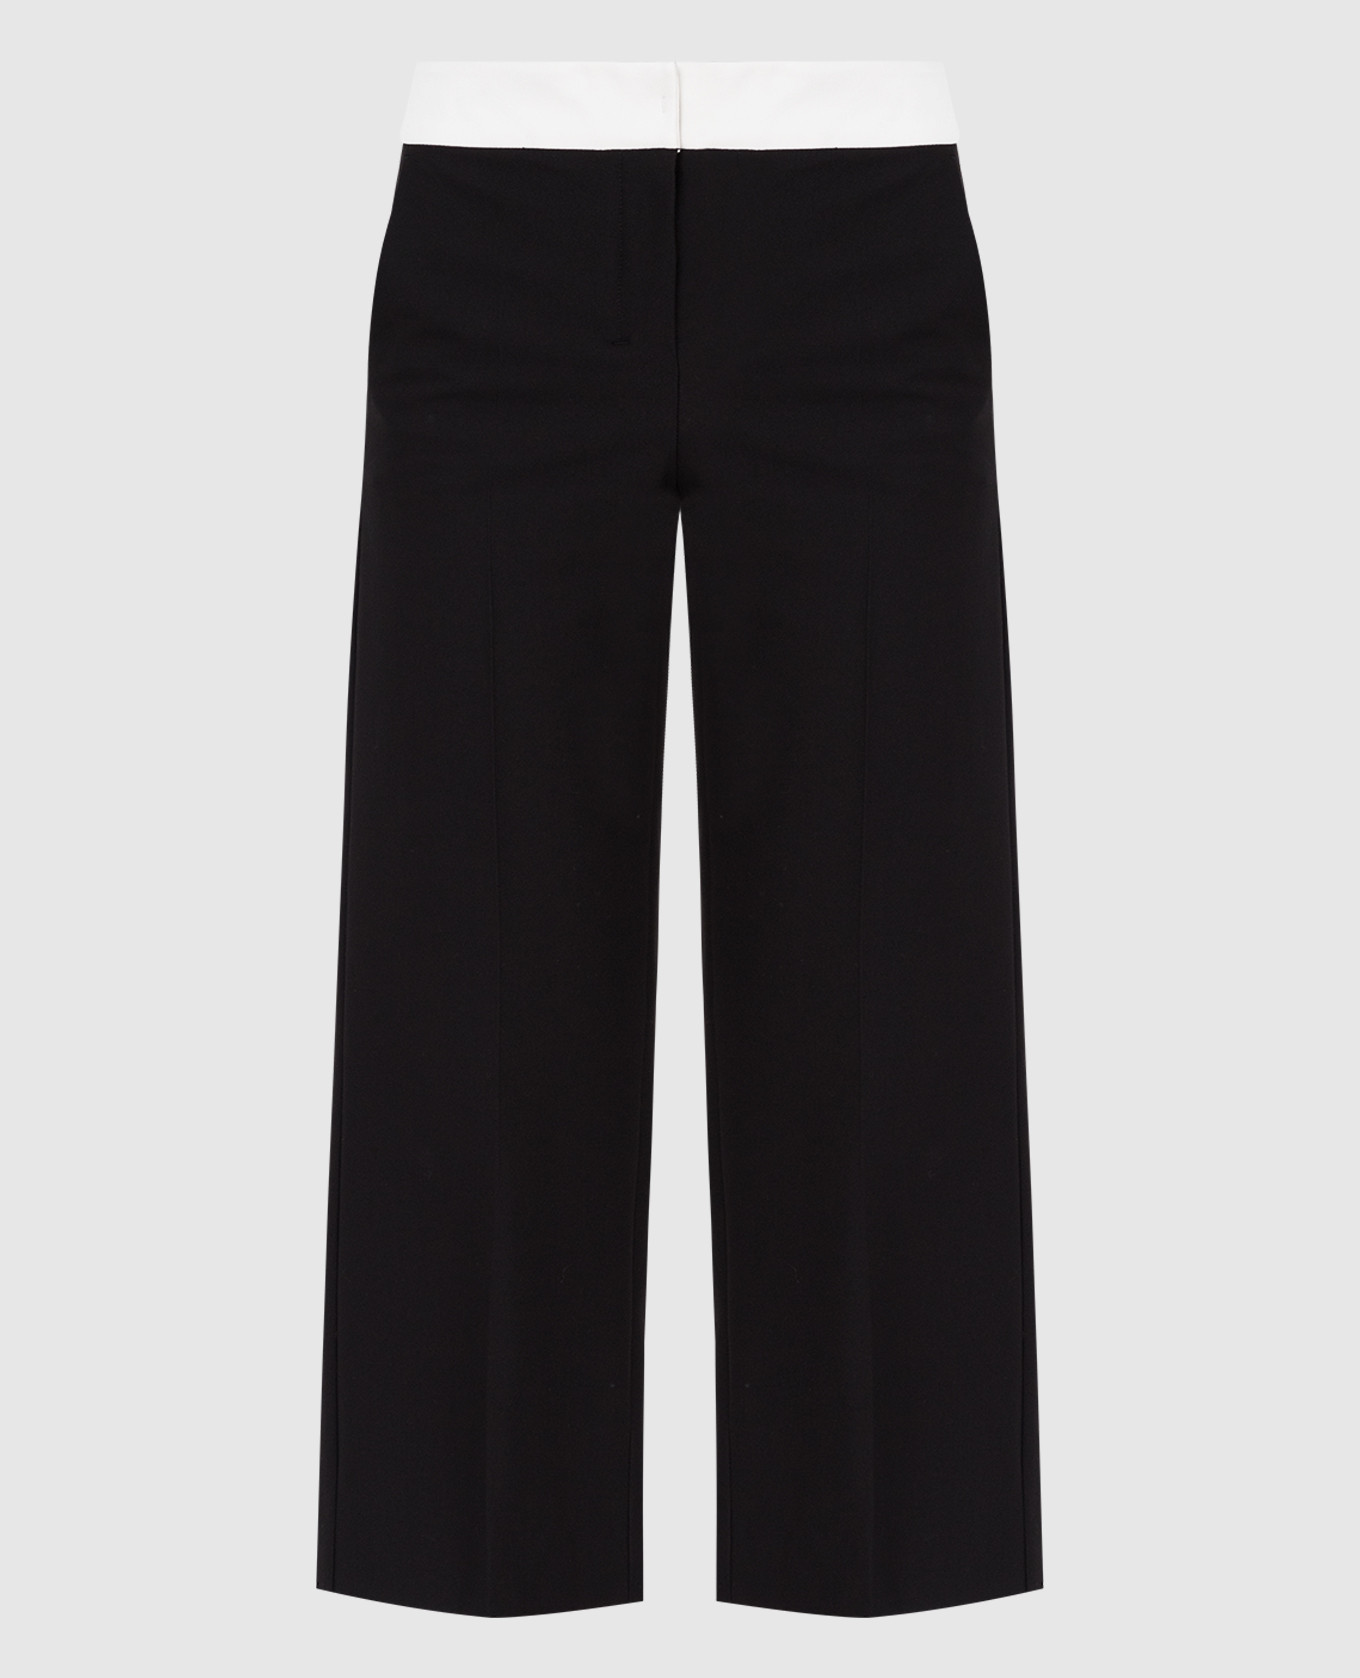 Baleari black trousers